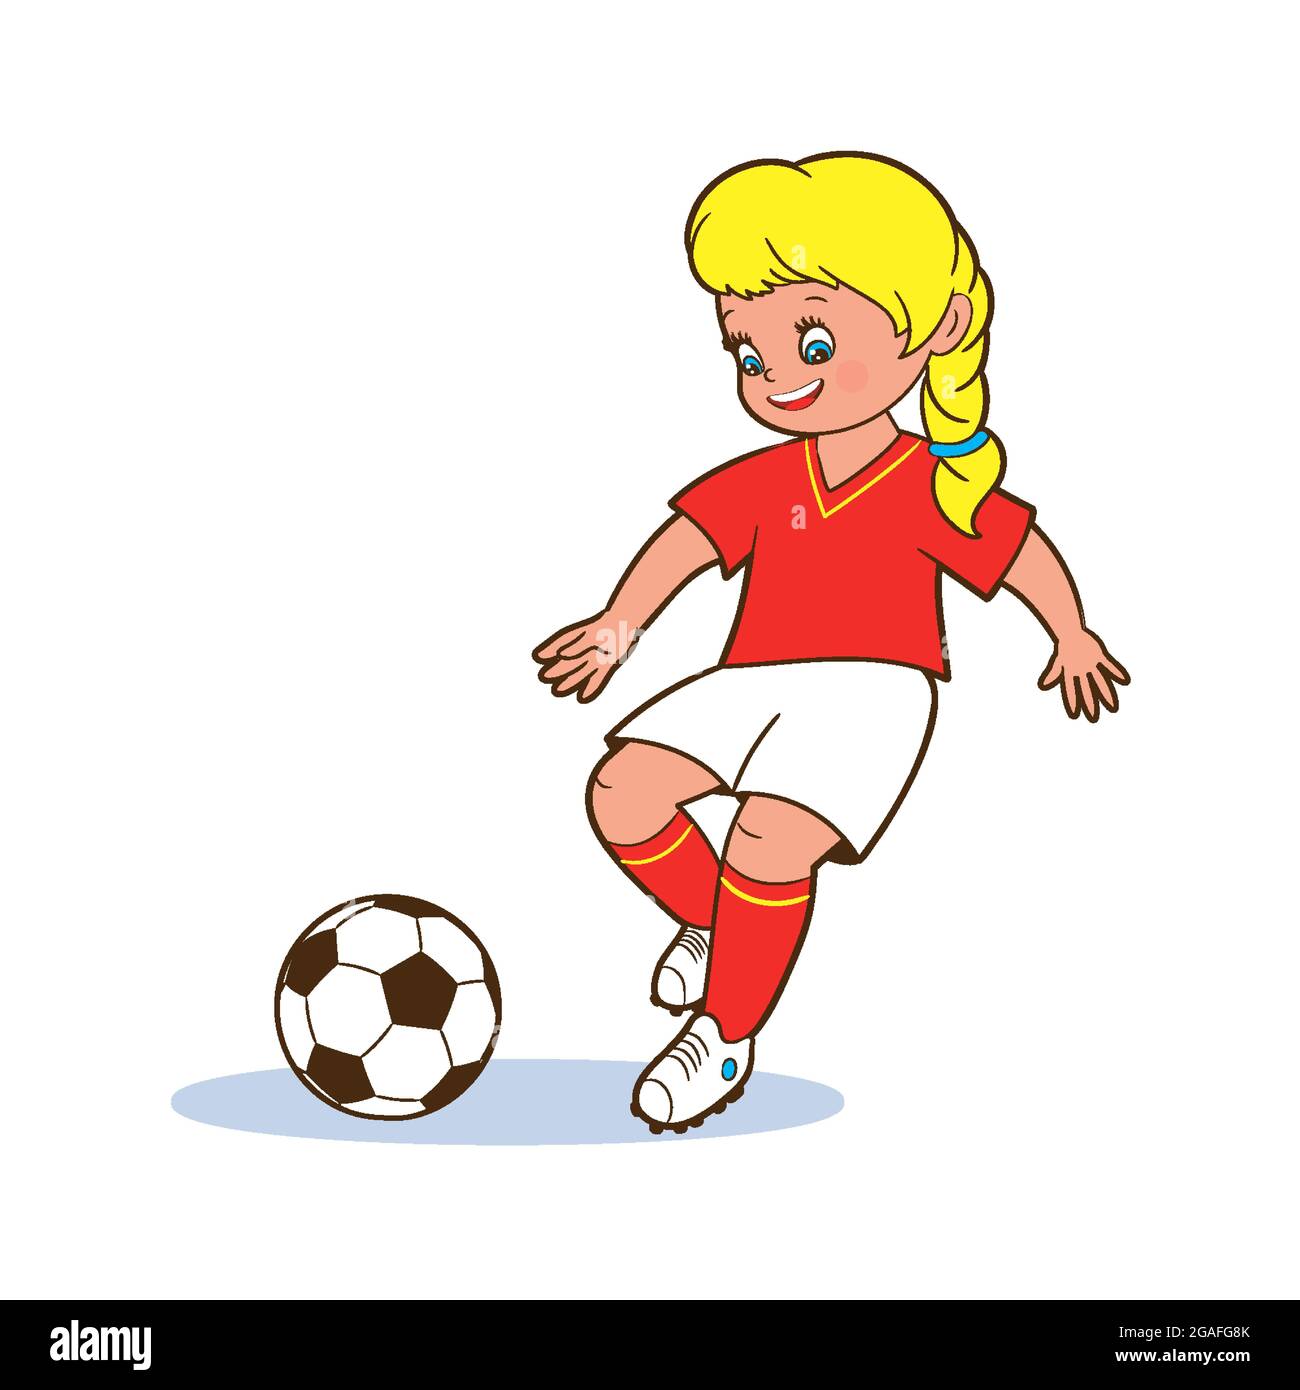 Une jeune fille joueur de football joue avec ses pieds un ballon de football. Illustrations vectorielles isolées en style de dessin animé sur fond blanc pour les enfants. Illustration de Vecteur